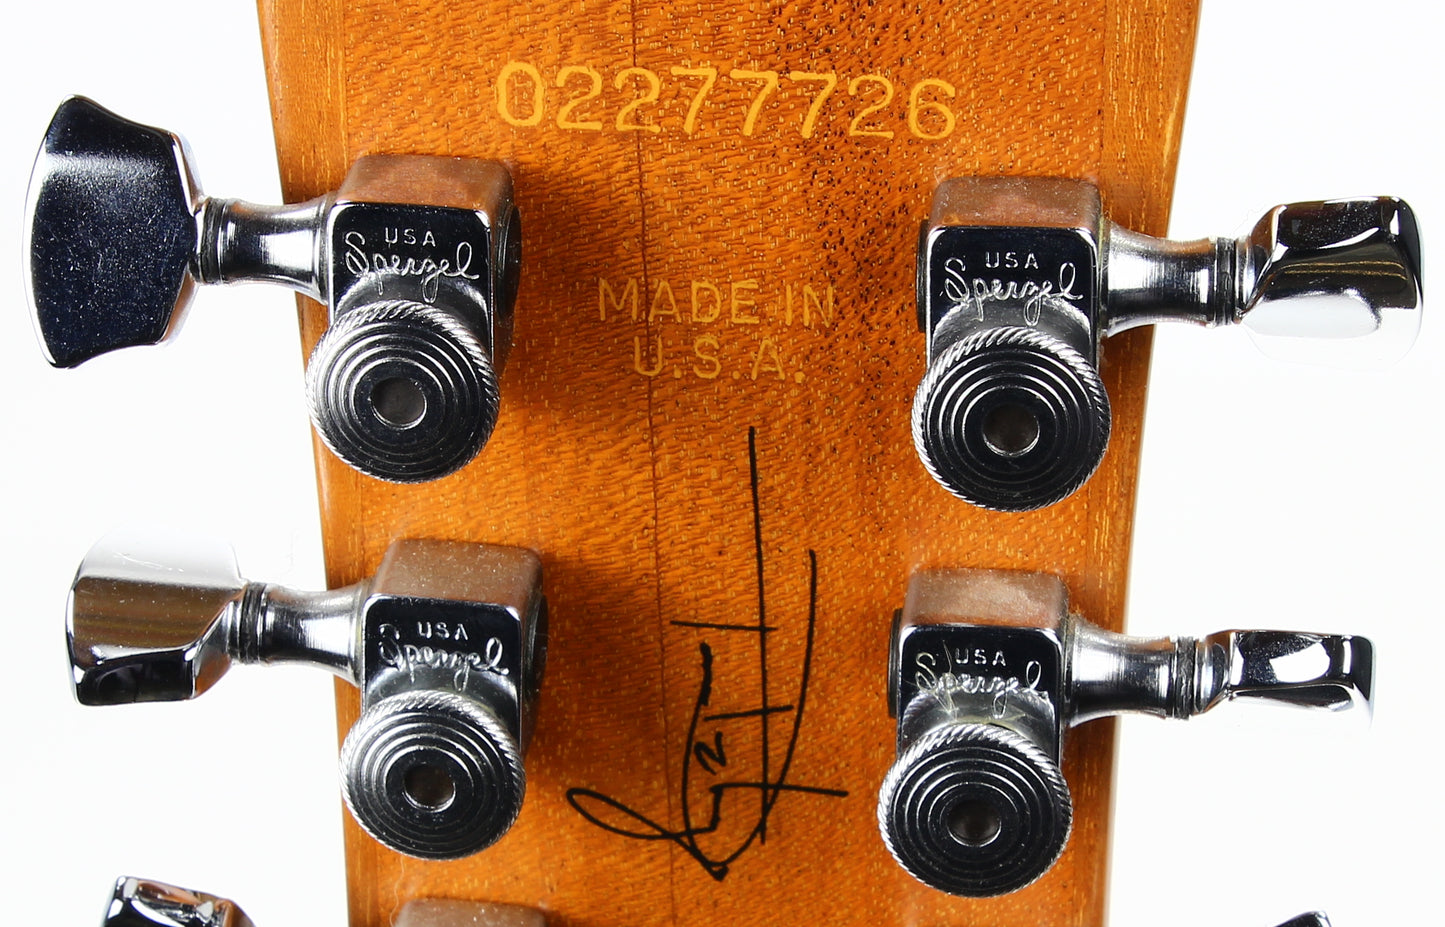 2007 Gibson Tom Delonge ES-333 Signature Model - Blink 182, Angels & Airwaves